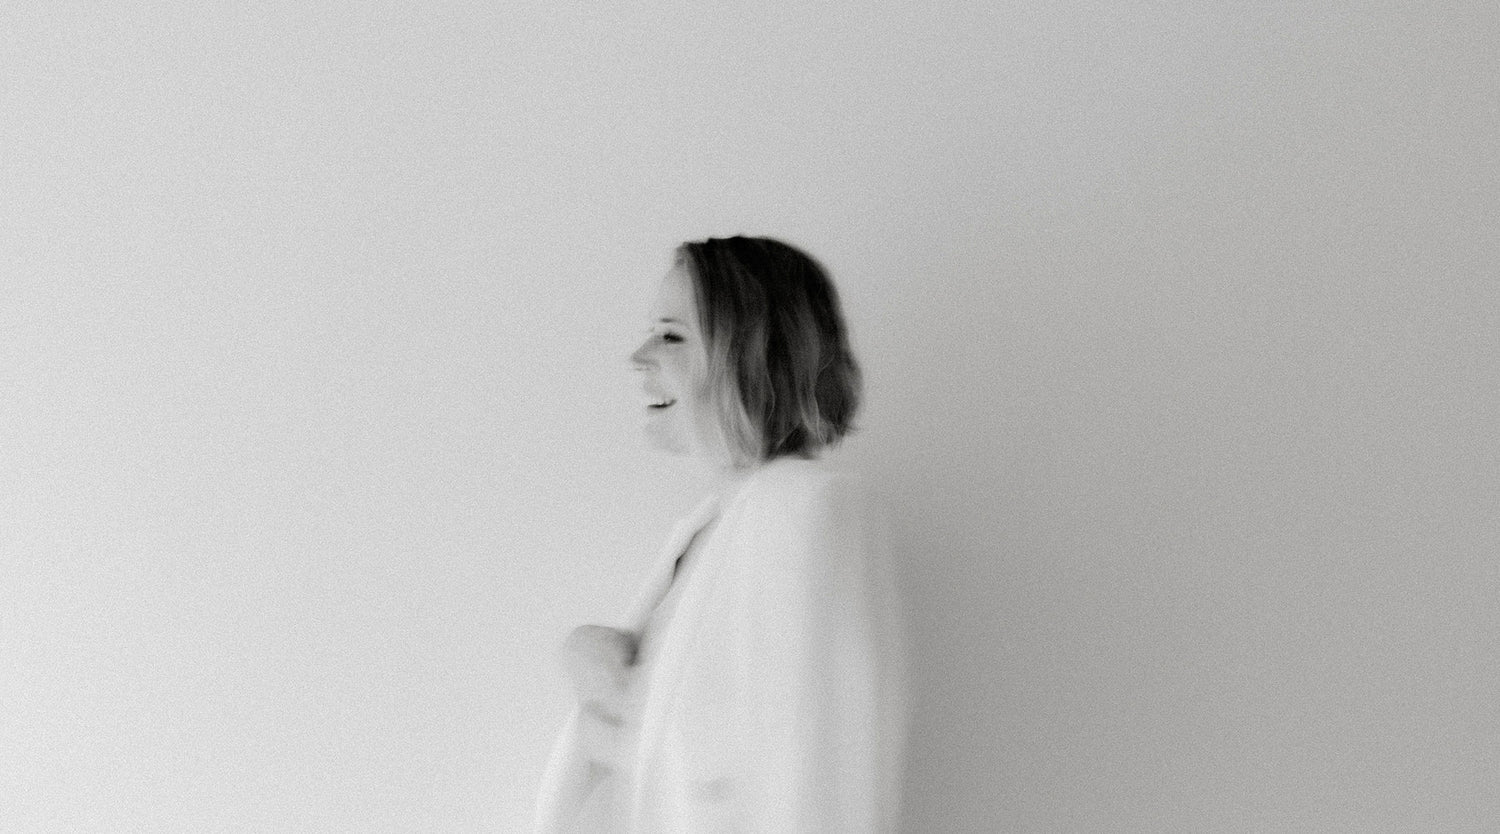 Boudoir valokuvaaja Henna Koponen. Boudoir photographer Henna Koponen.